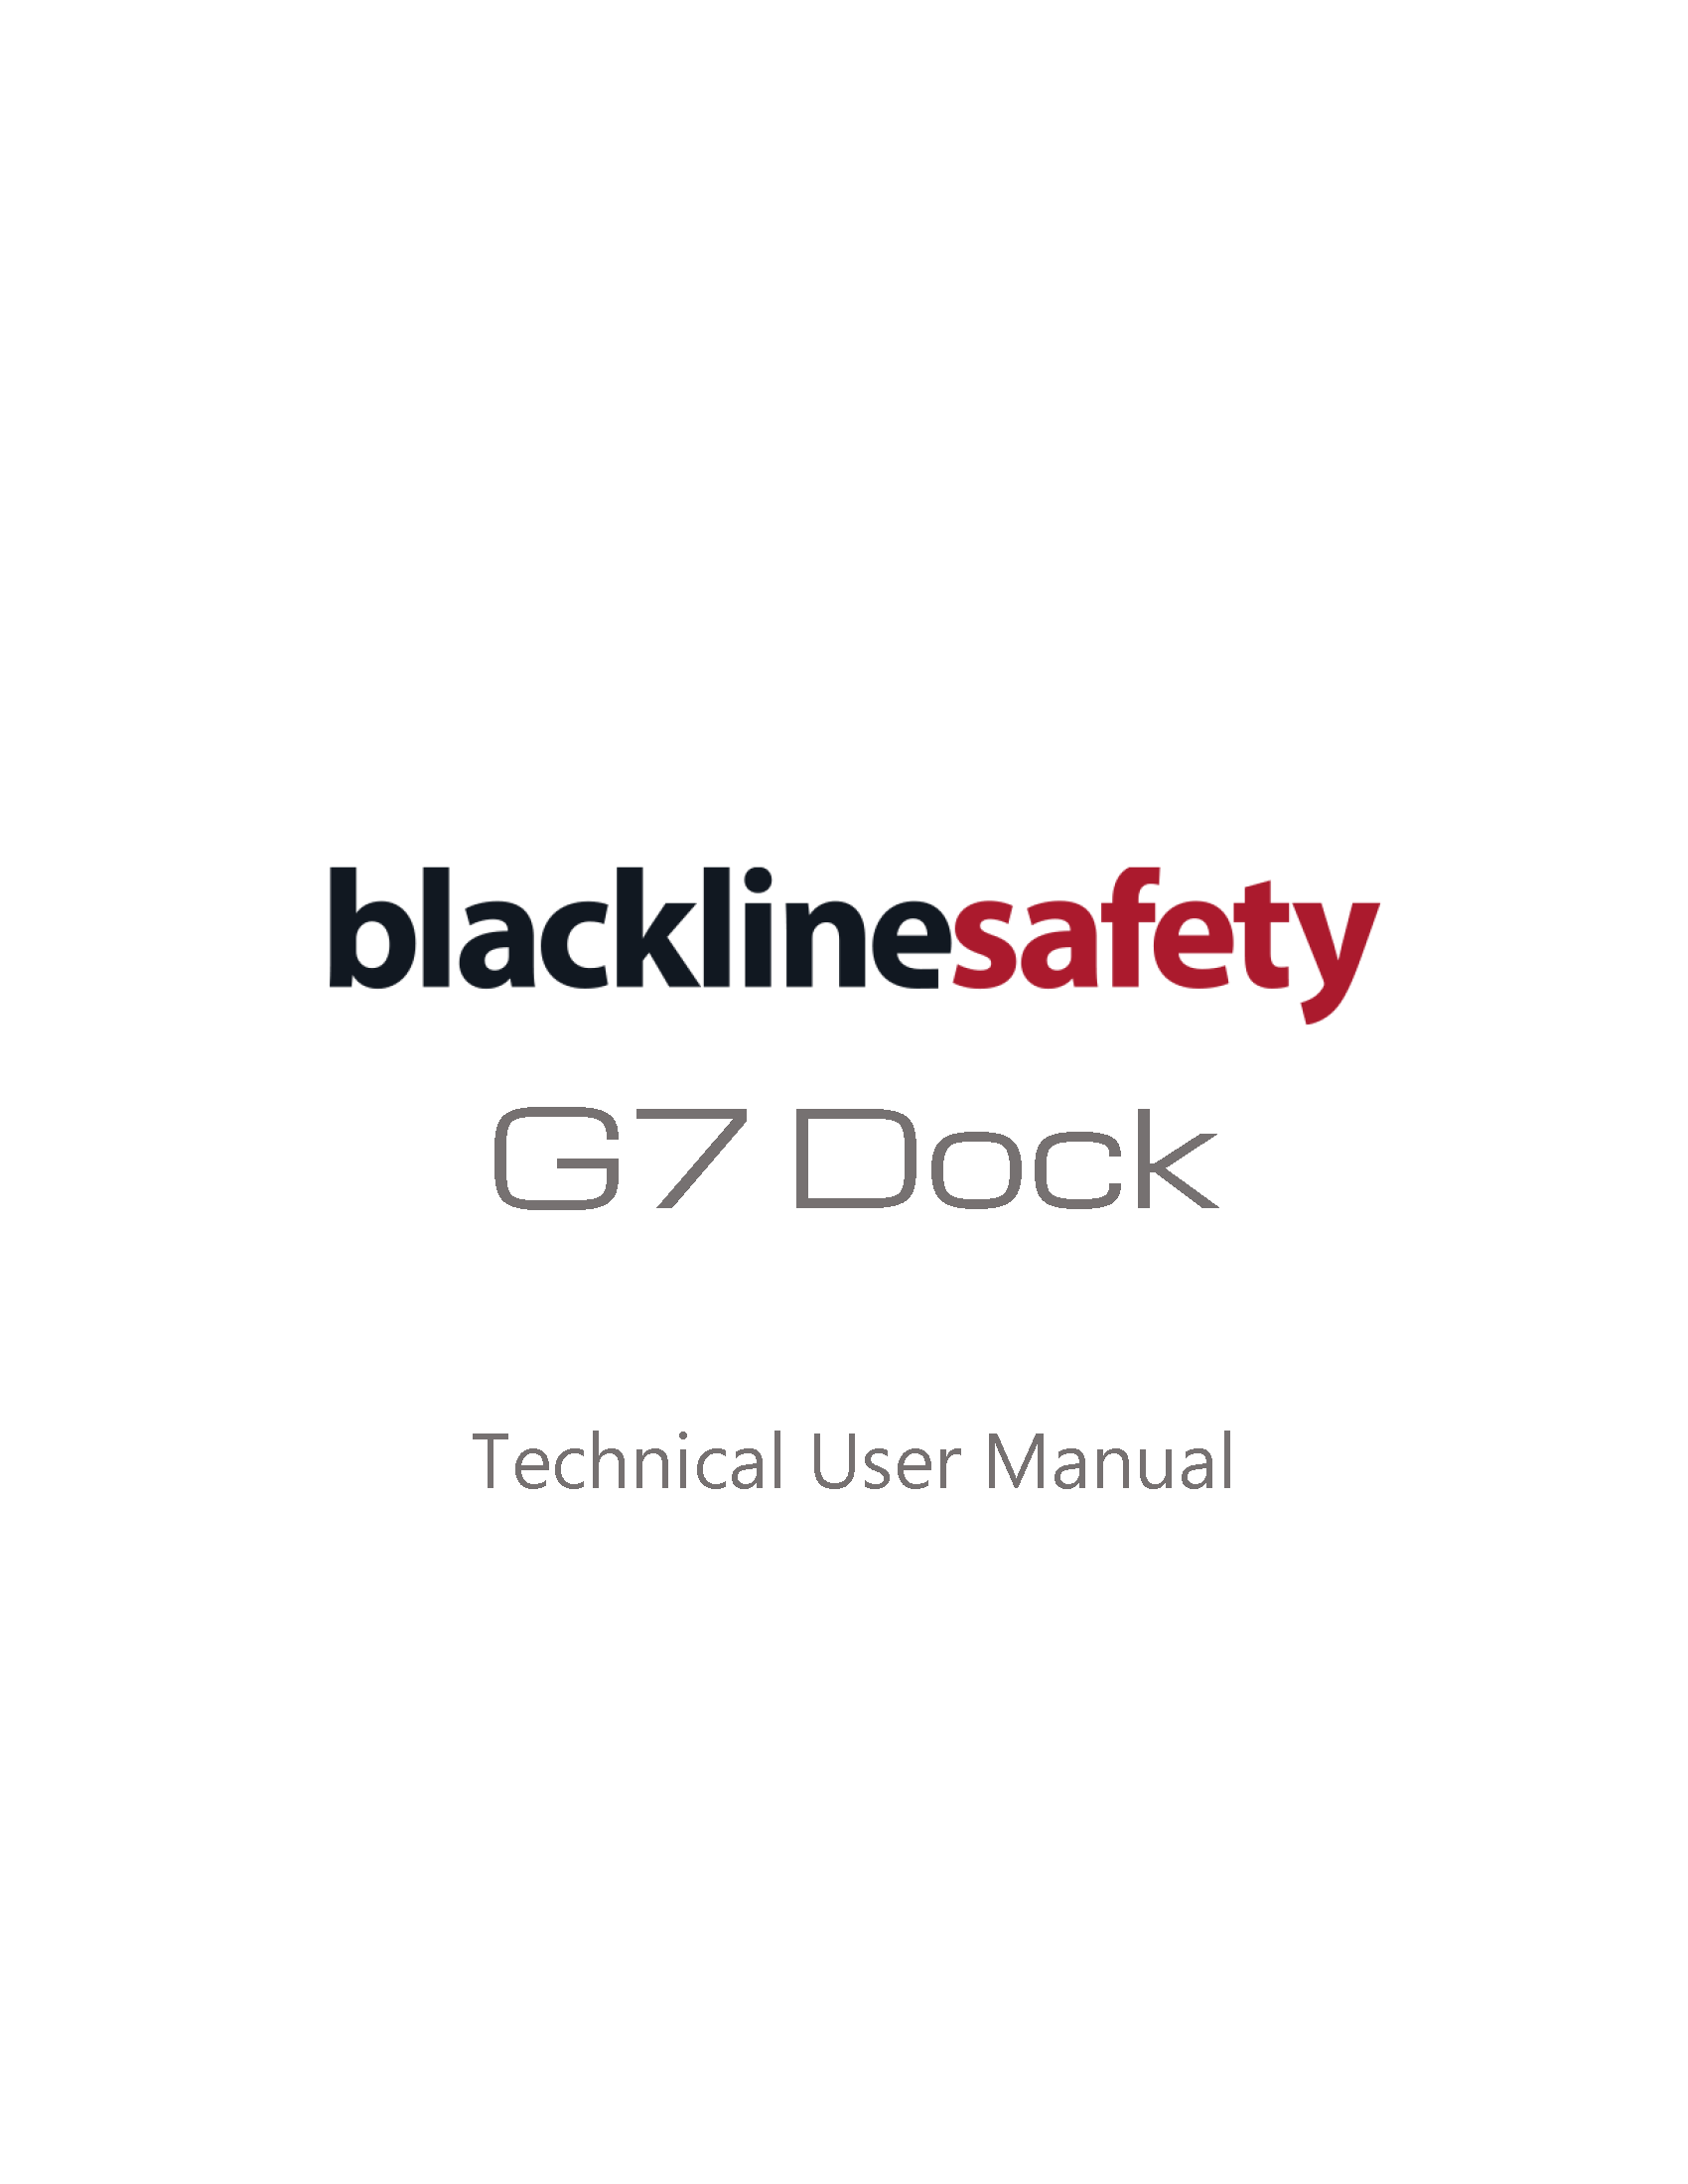 Couverture du manuel d'utilisation technique du dock G7